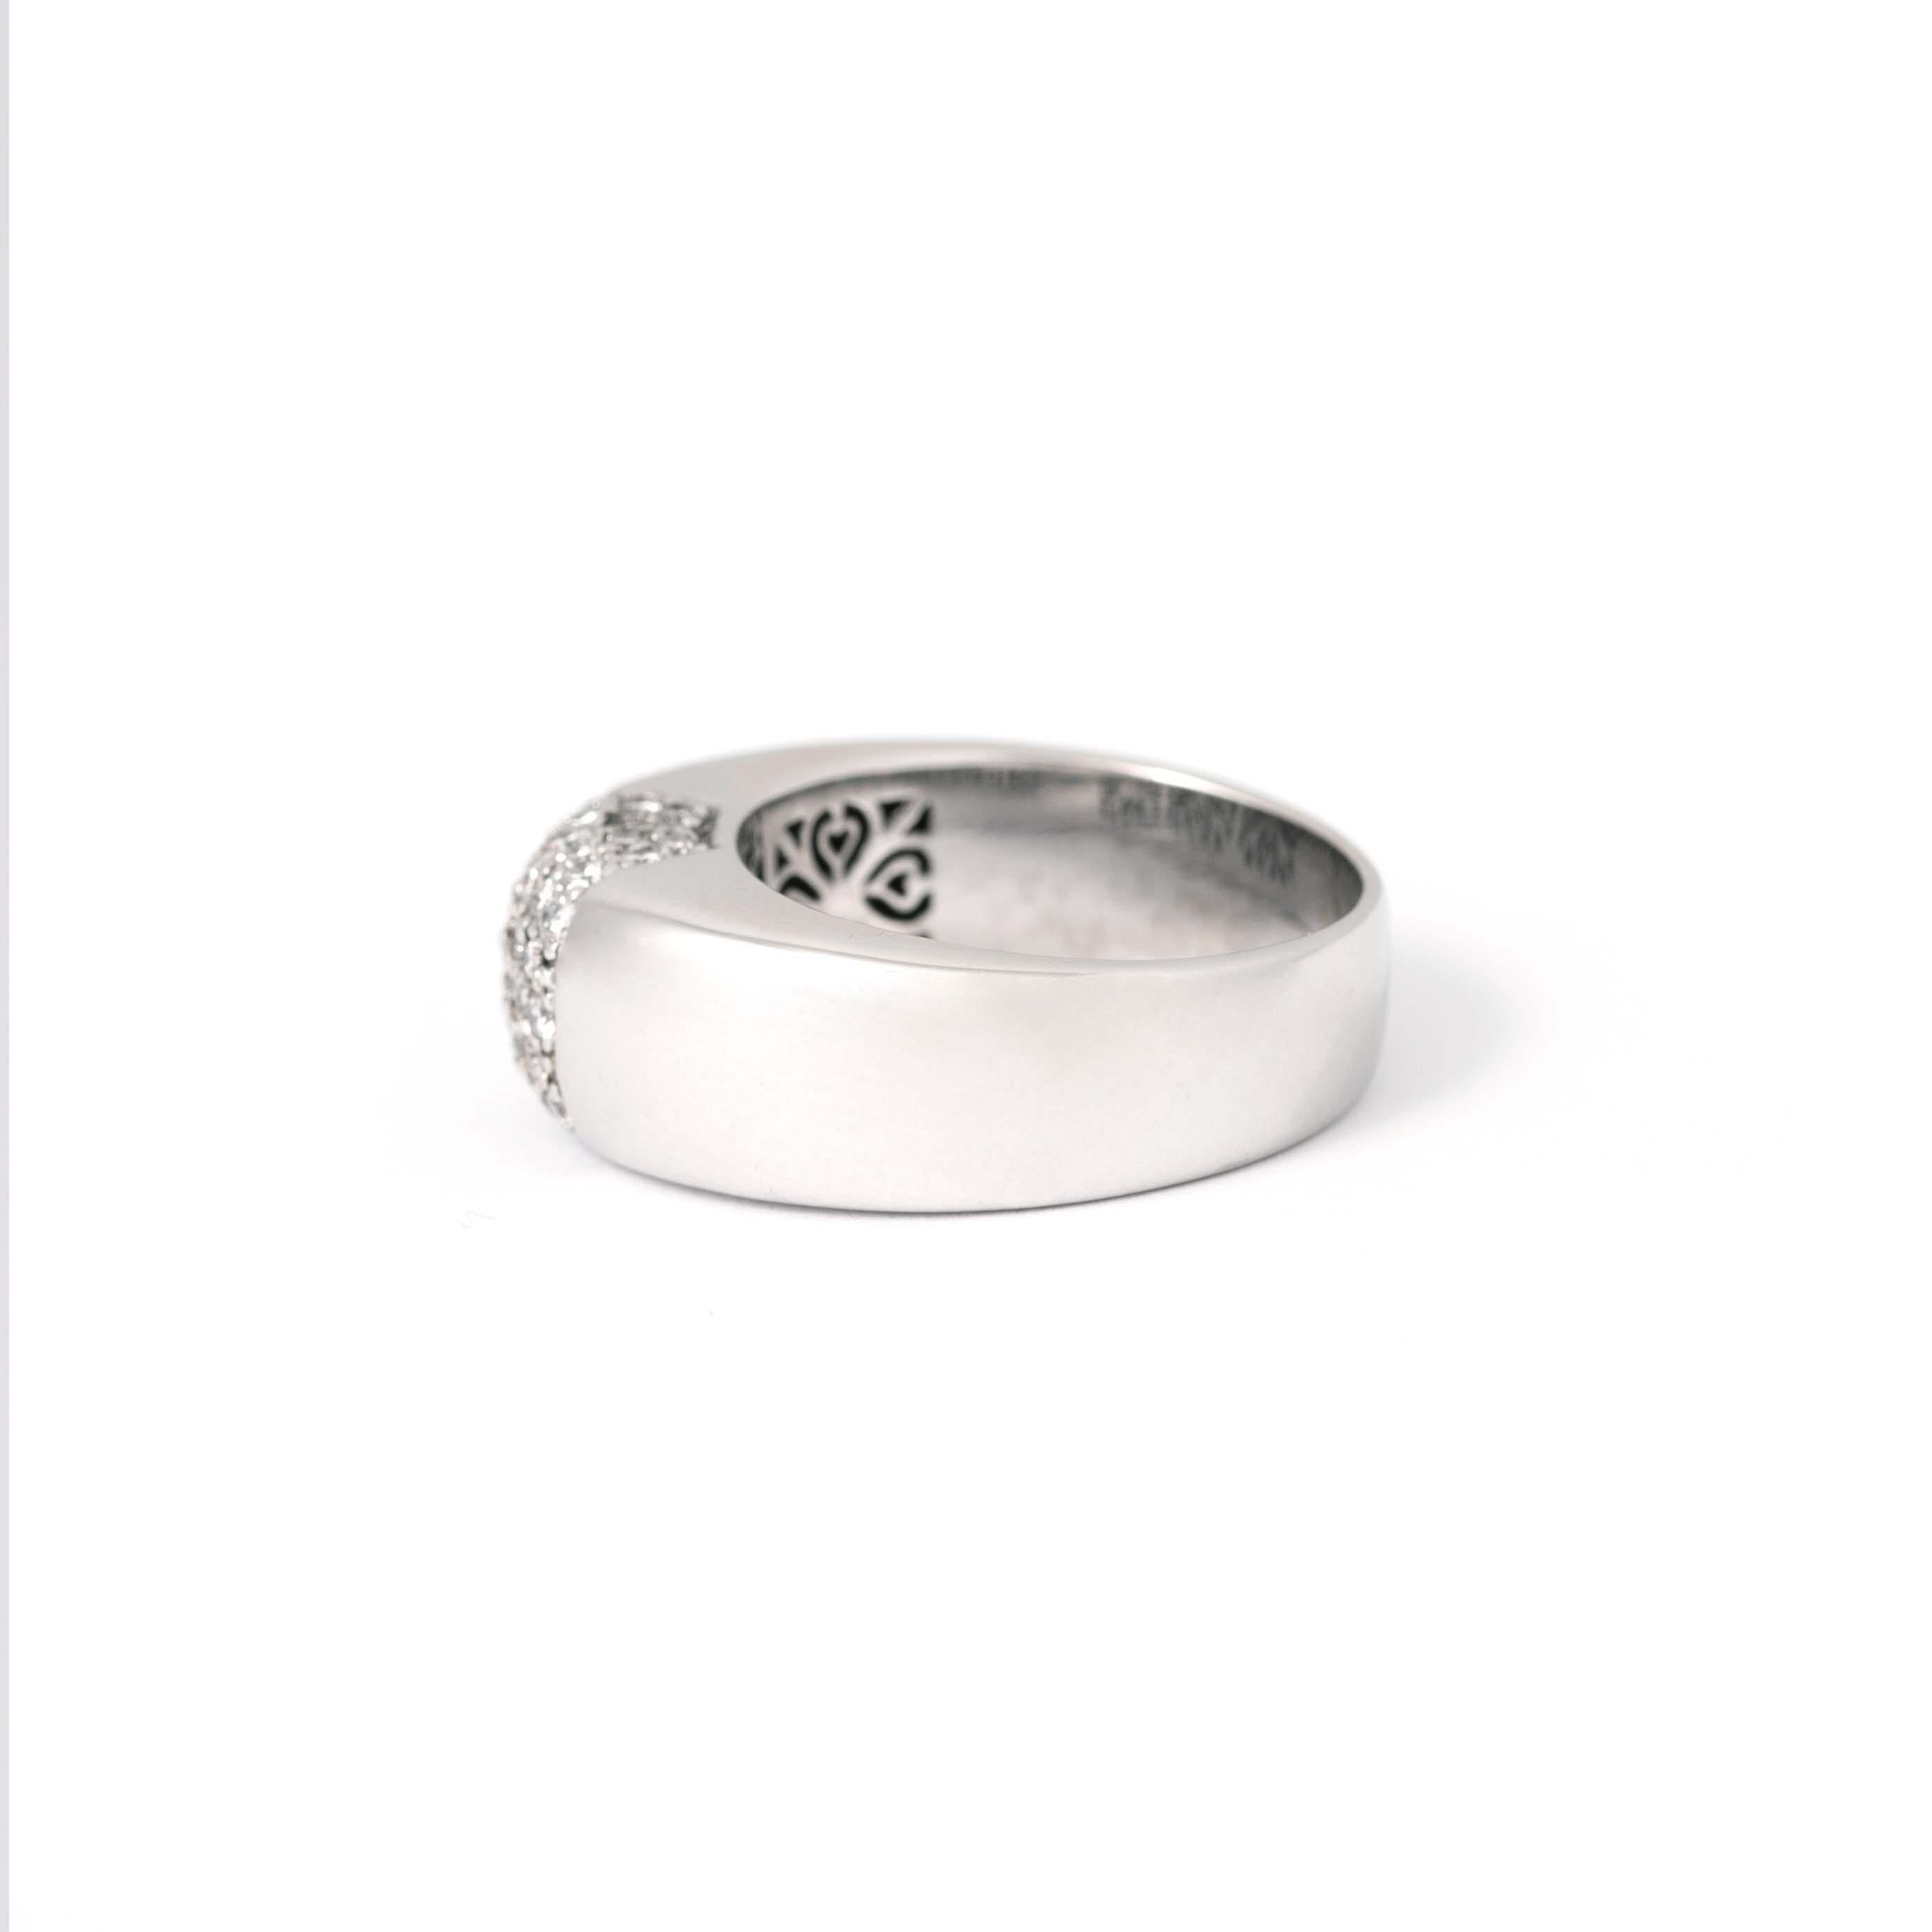 Diamond 18K White Ring.
Gross weight: 9.34 grams.